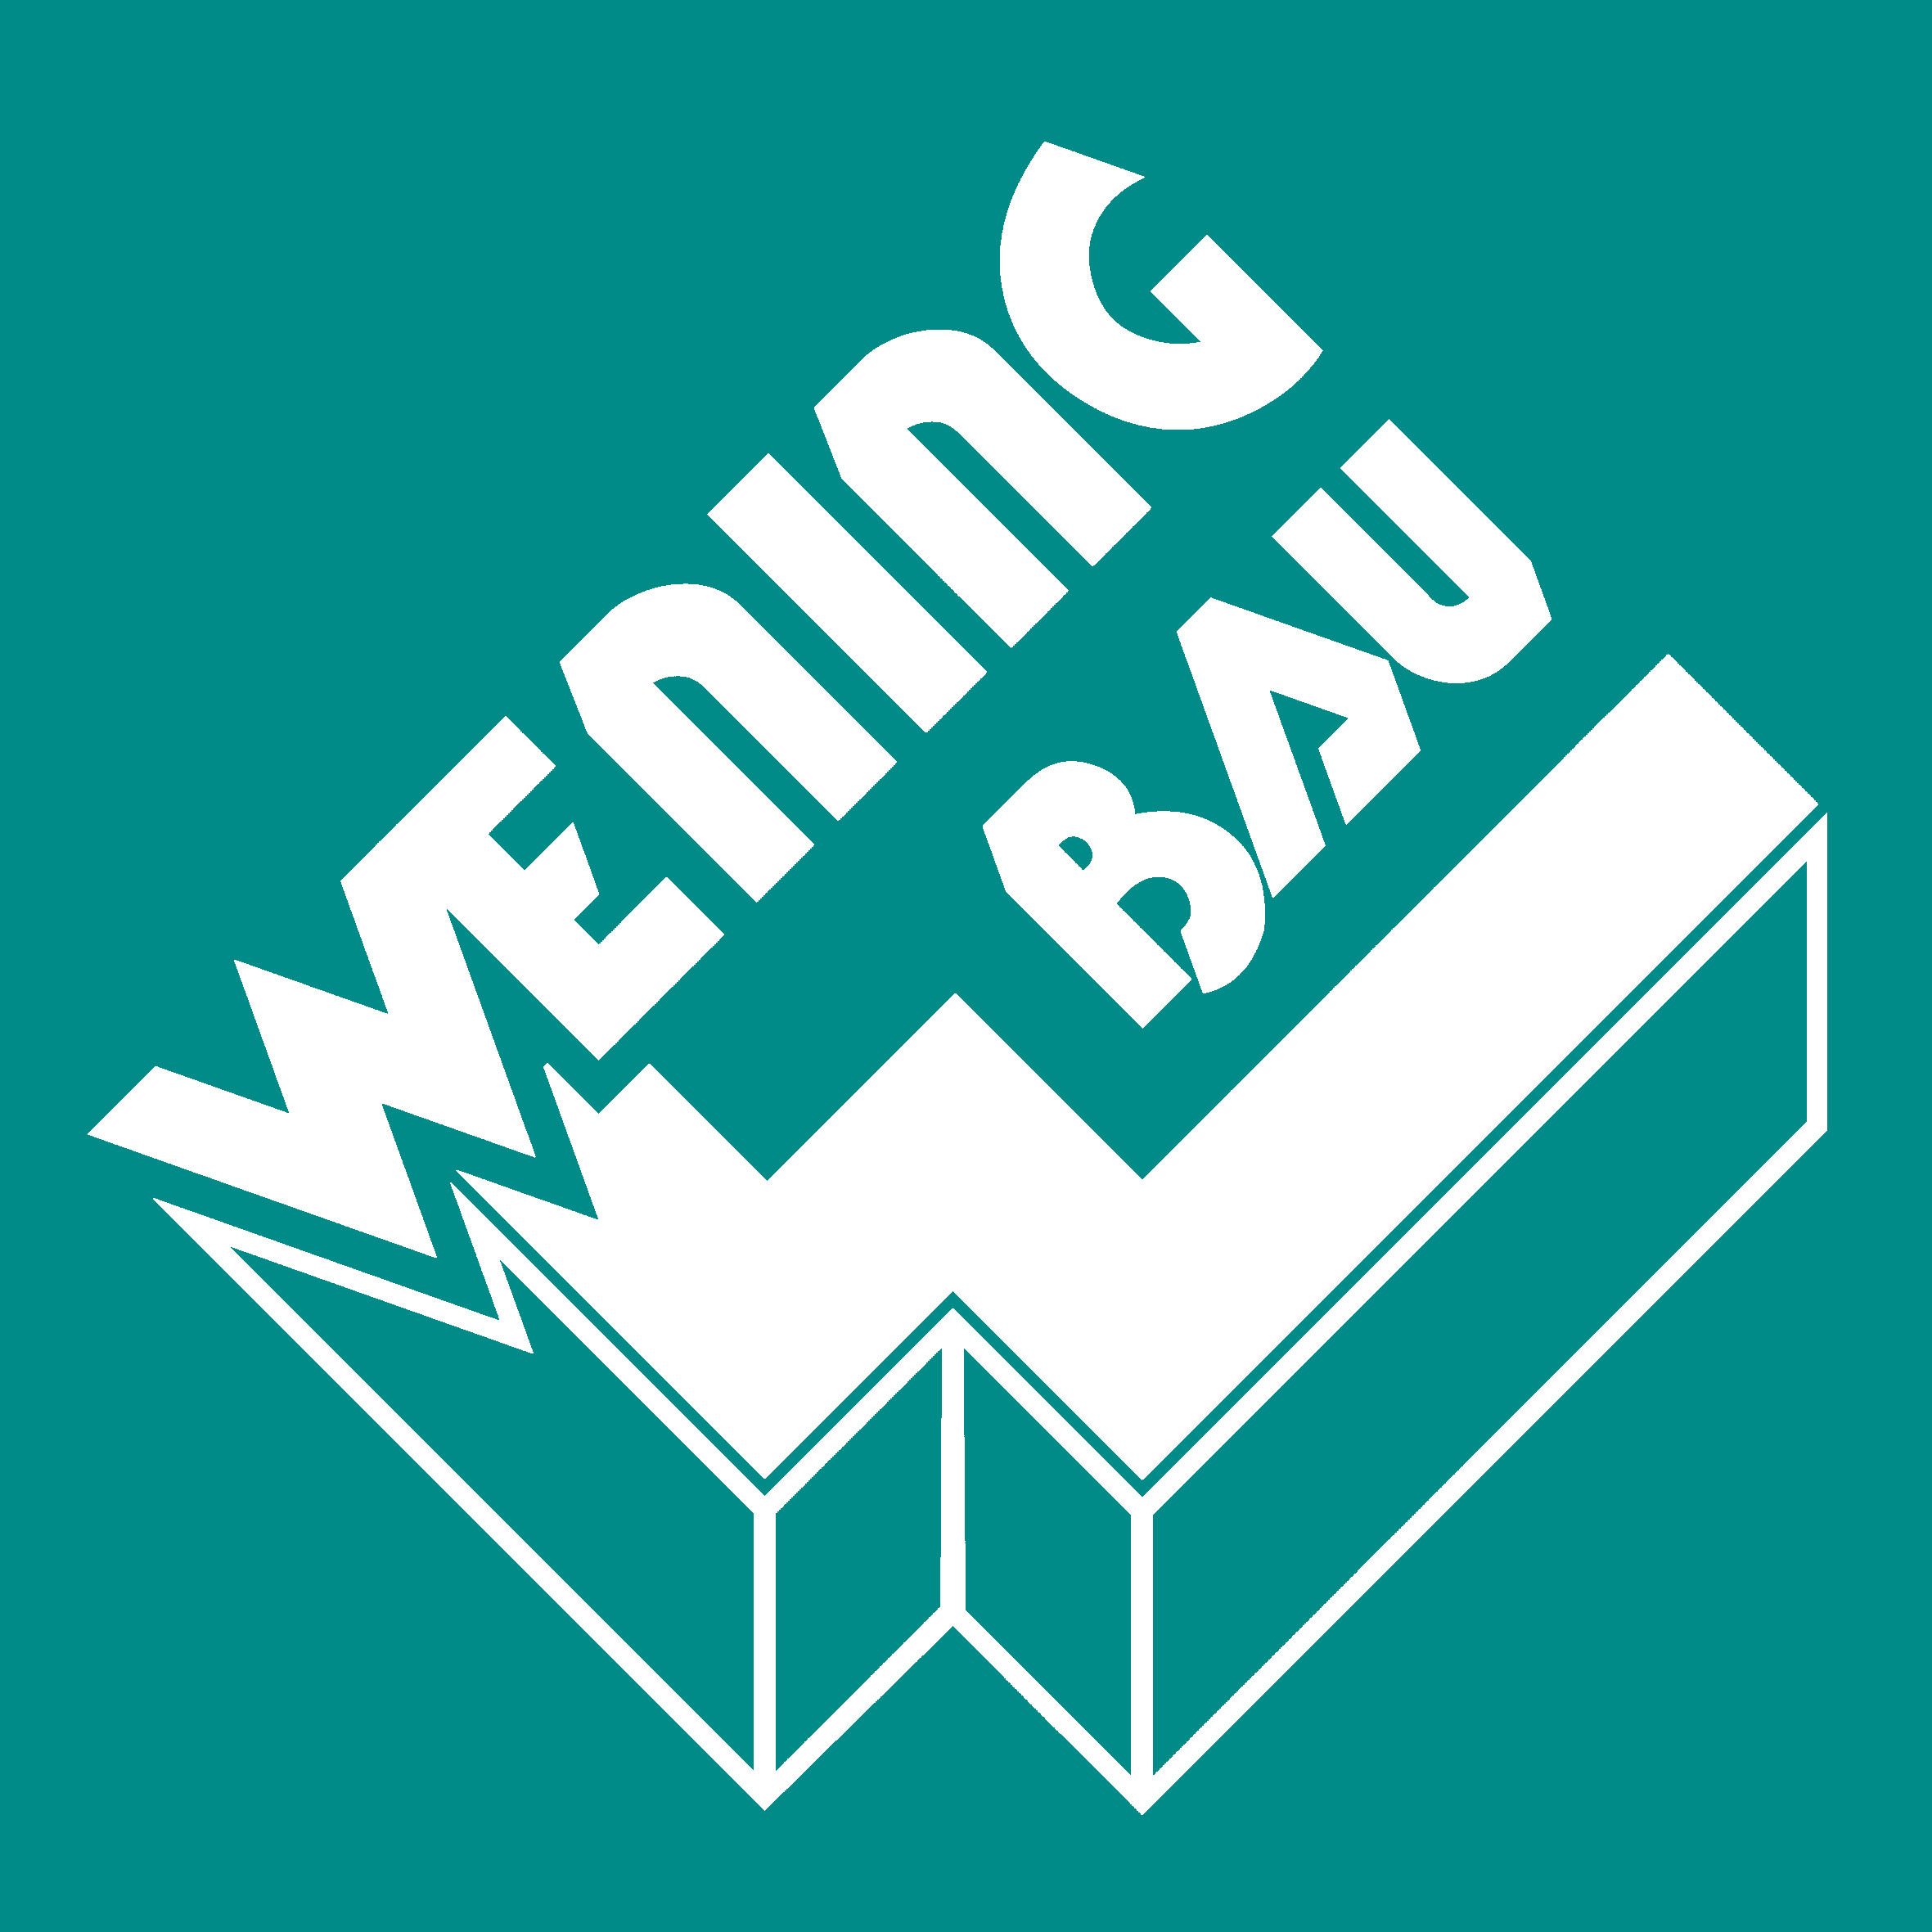 Wening Bau GmbH - Bauträger und Bauunternehmen in Offenhausen in Mittelfranken - Logo